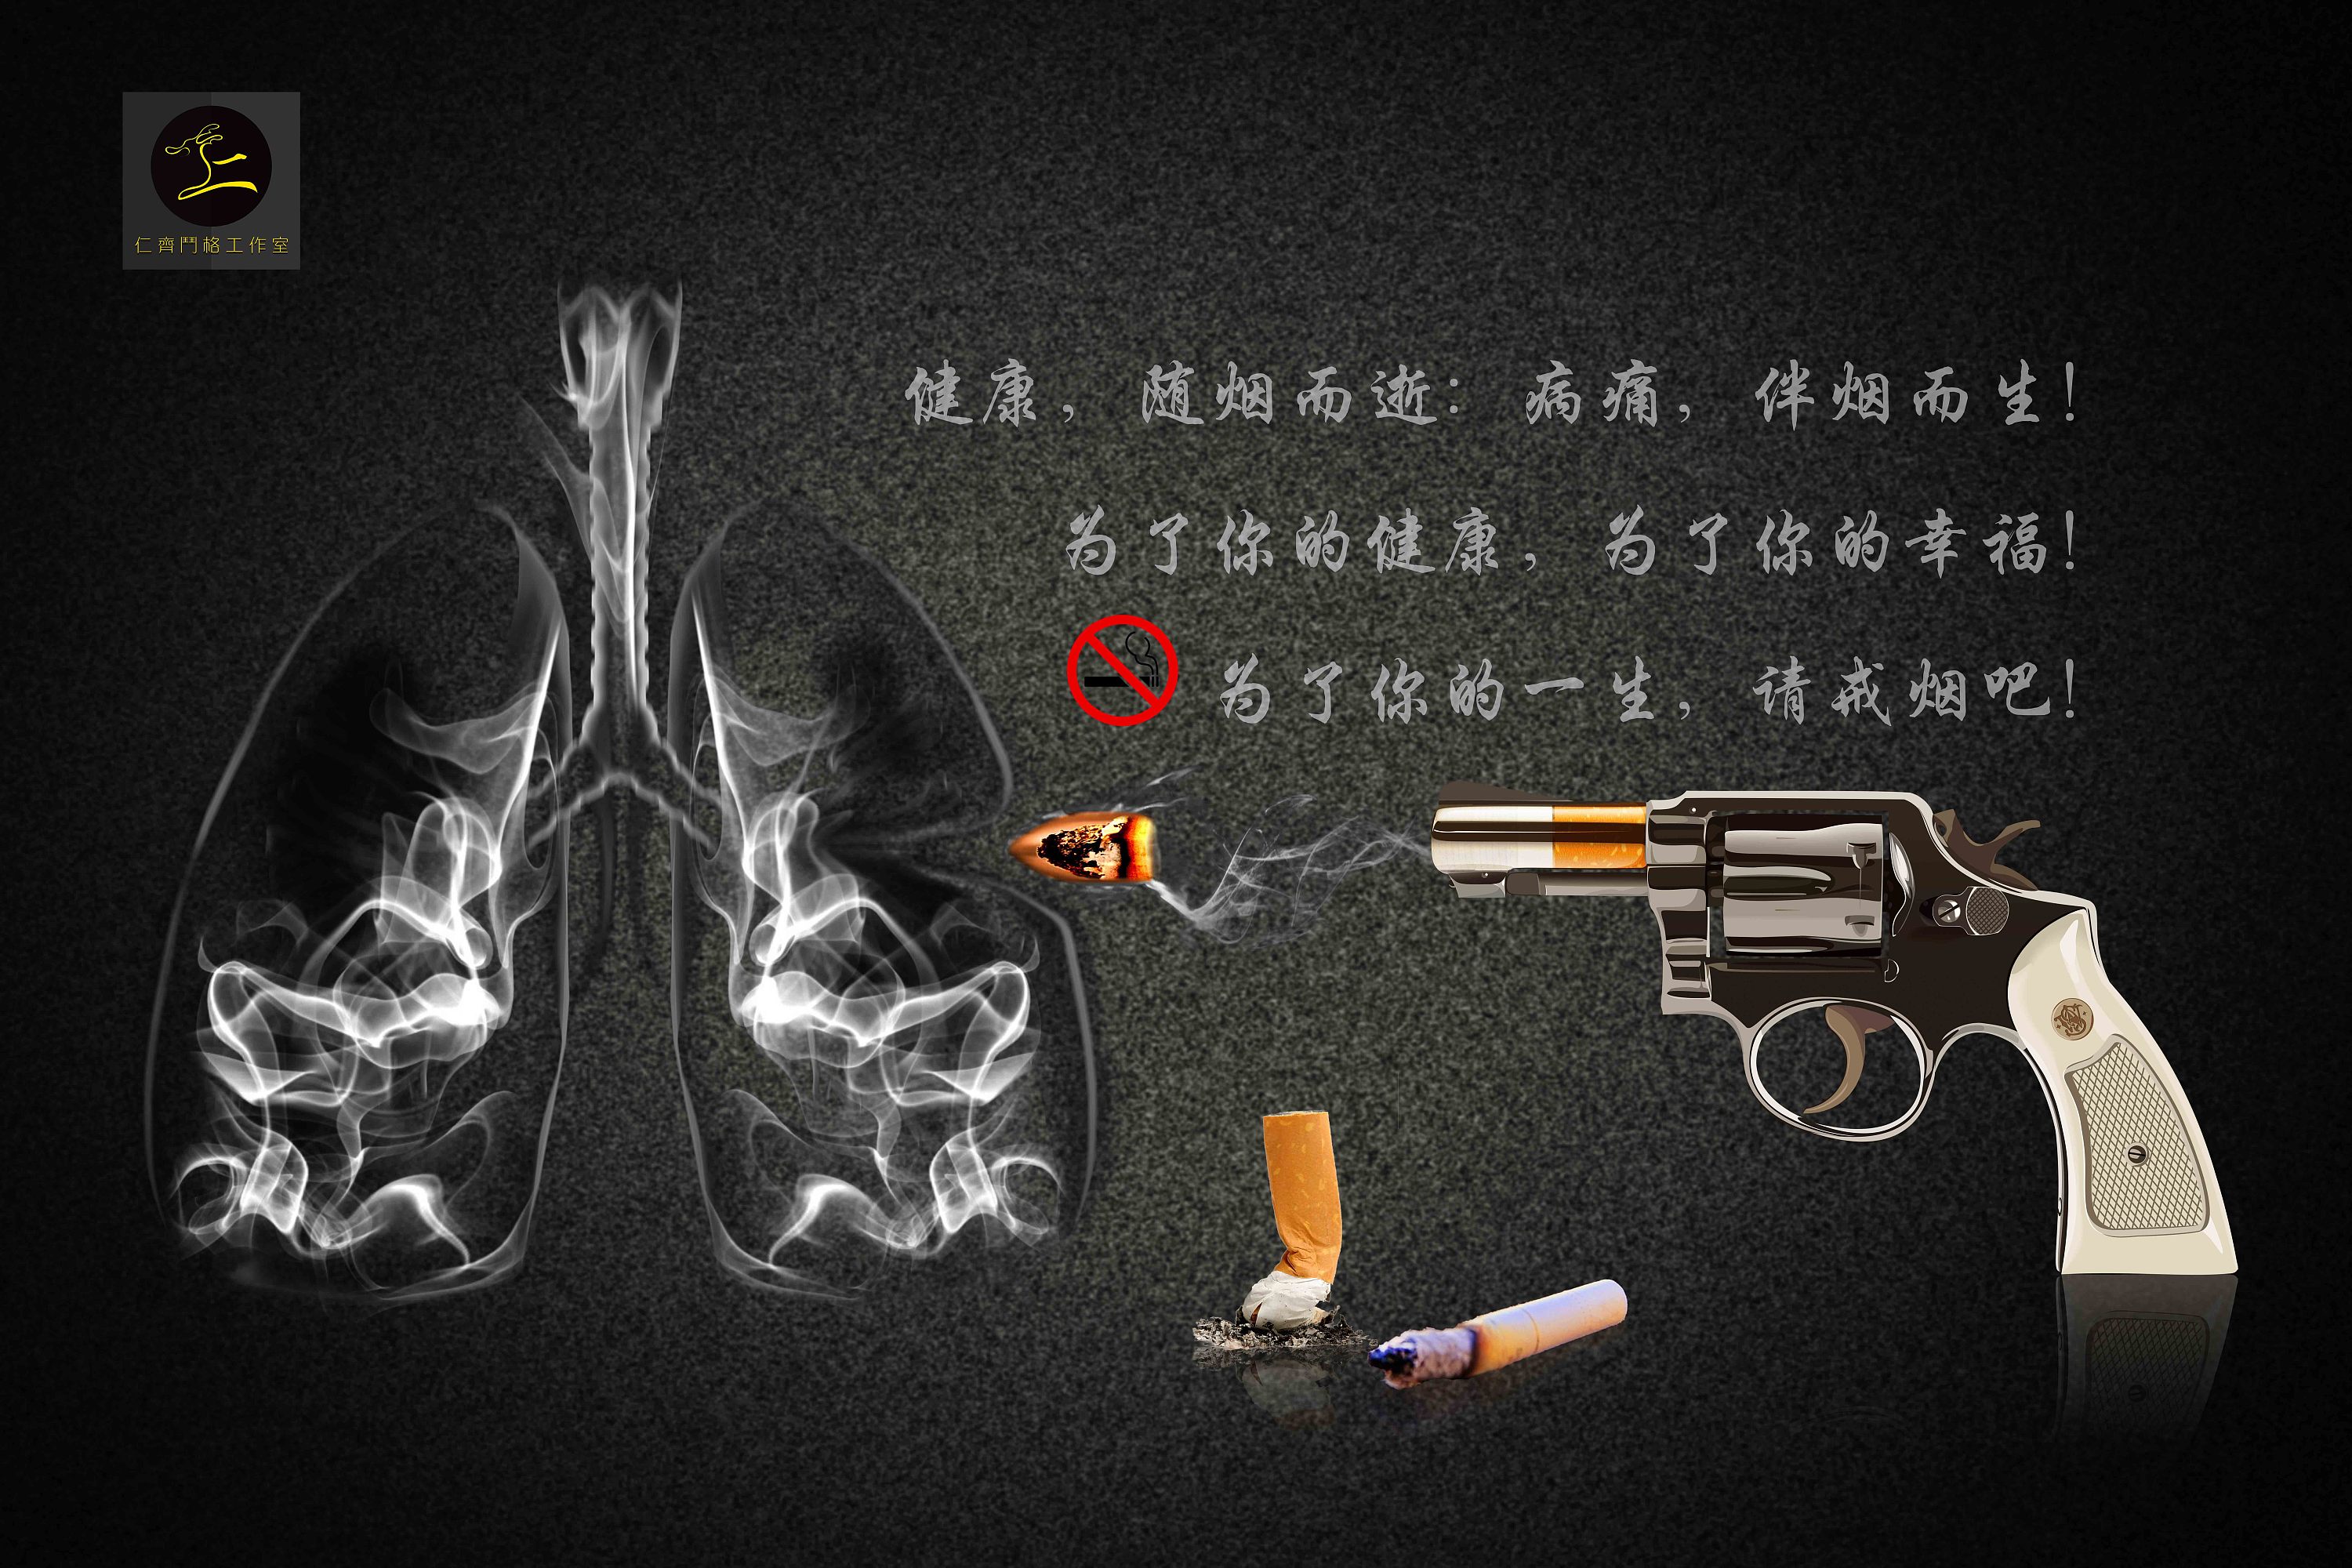 吸烟有害健康背景图图片